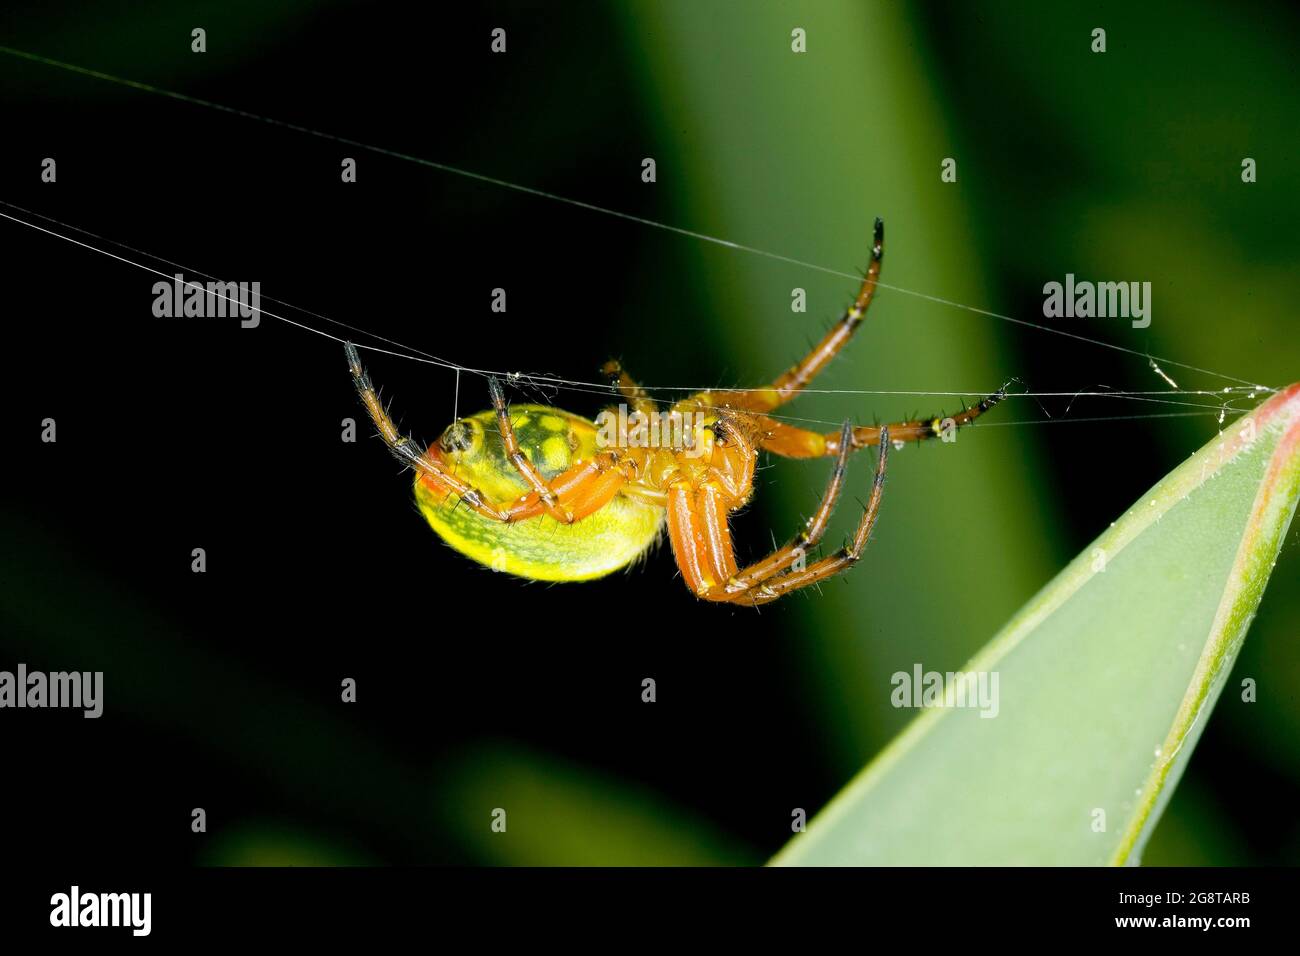 gourd spider, pumpkin spider (Araniella cucurbitina, Araneus cucurbitinus), climbs along a spinning thread, Austria Stock Photo